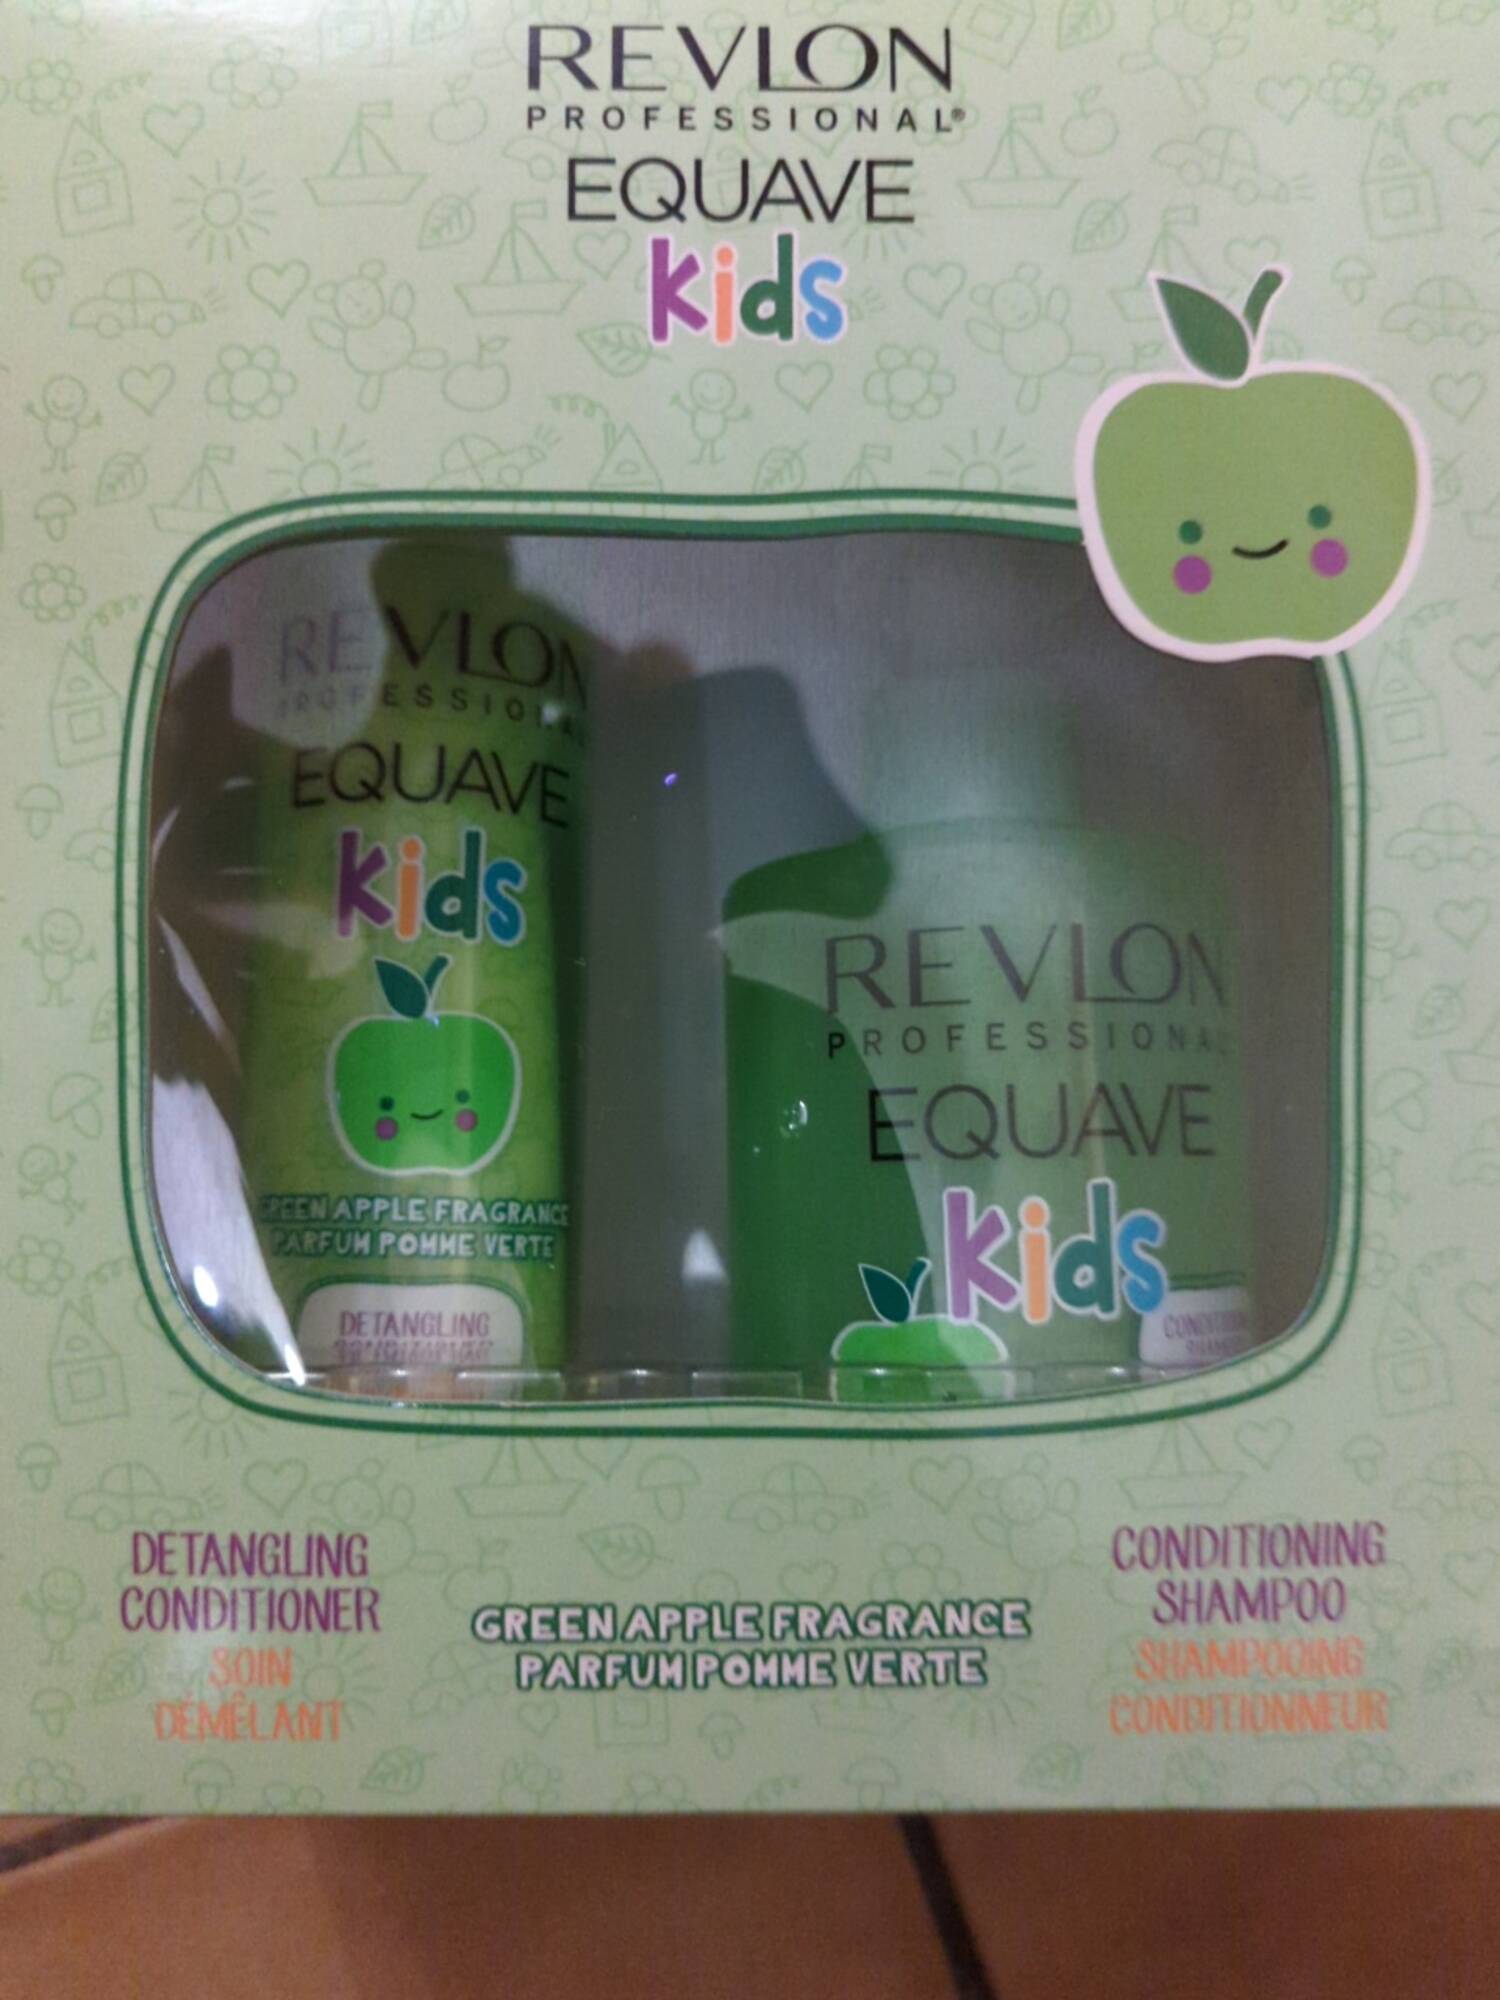 REVLON - Equave kids - Soin démêlant et shampooing conditionneur